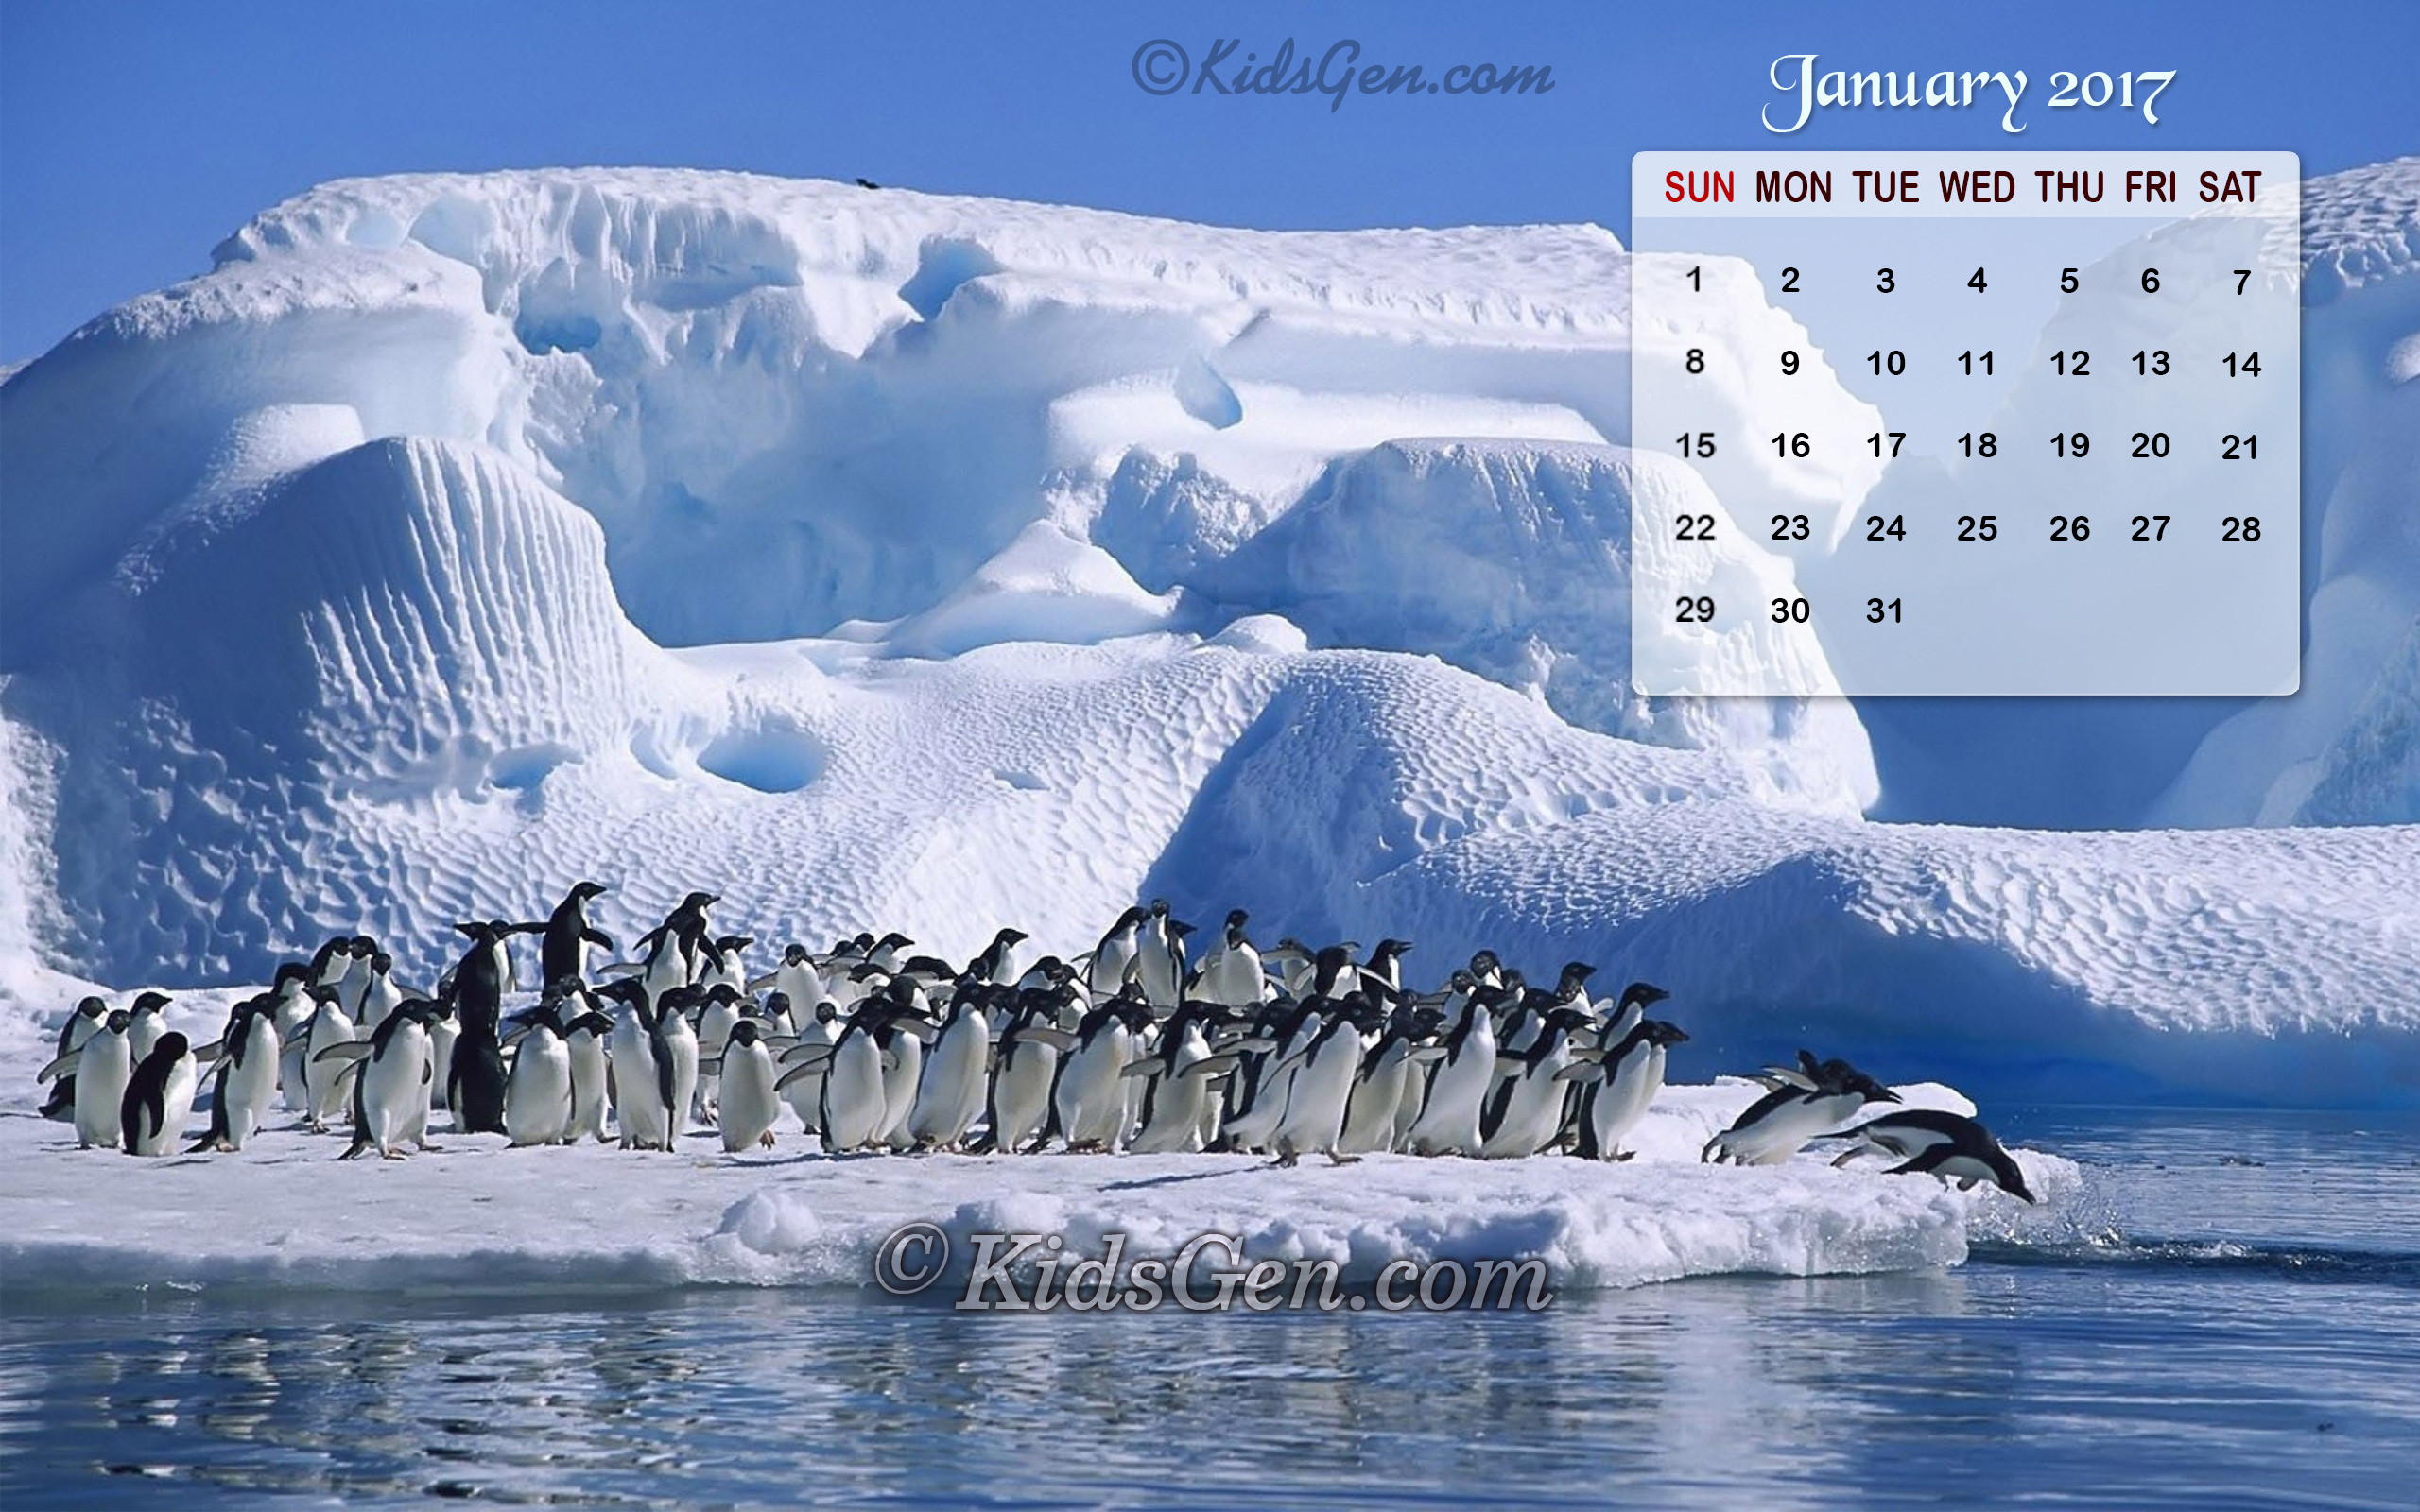 2560x1600 High Definition winter themed calendar wallpaper for 2017